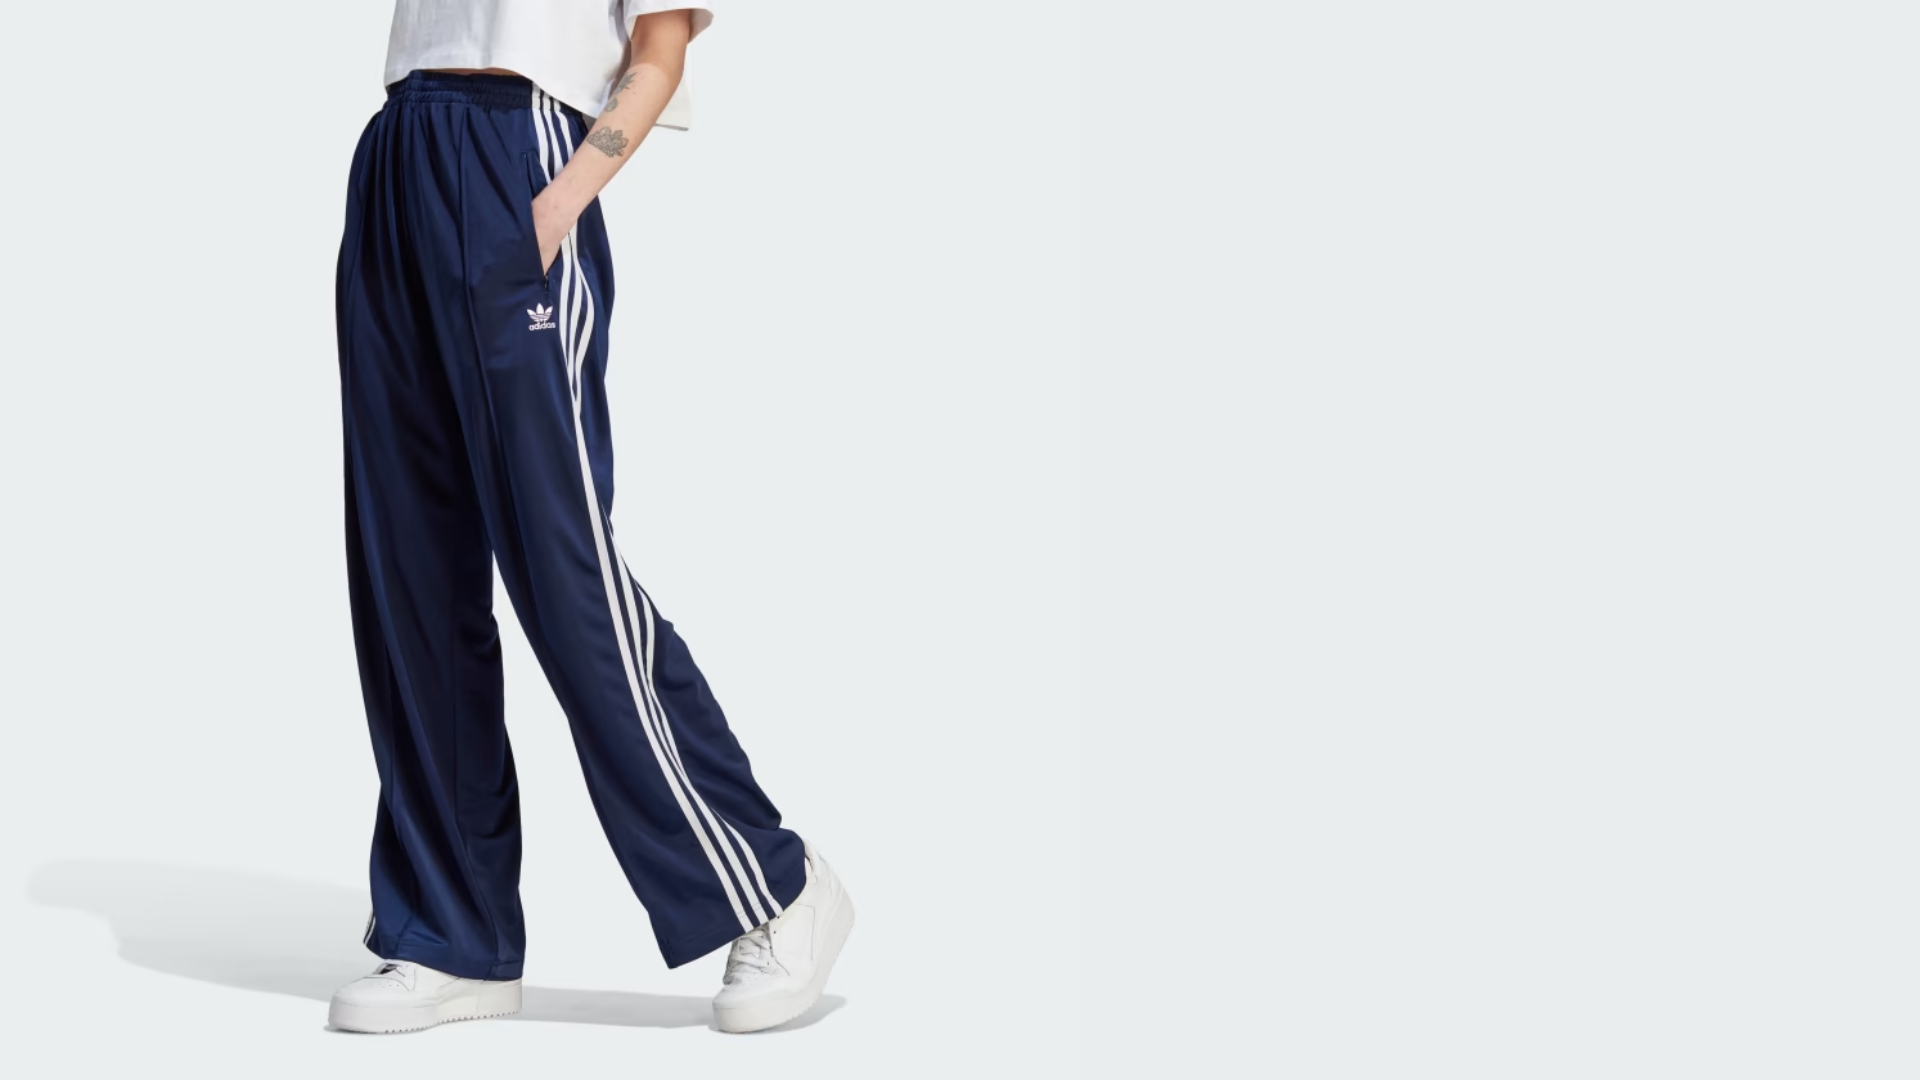 Pantalones Tendencia: Los Firebird Adidas que Marcan Estilo